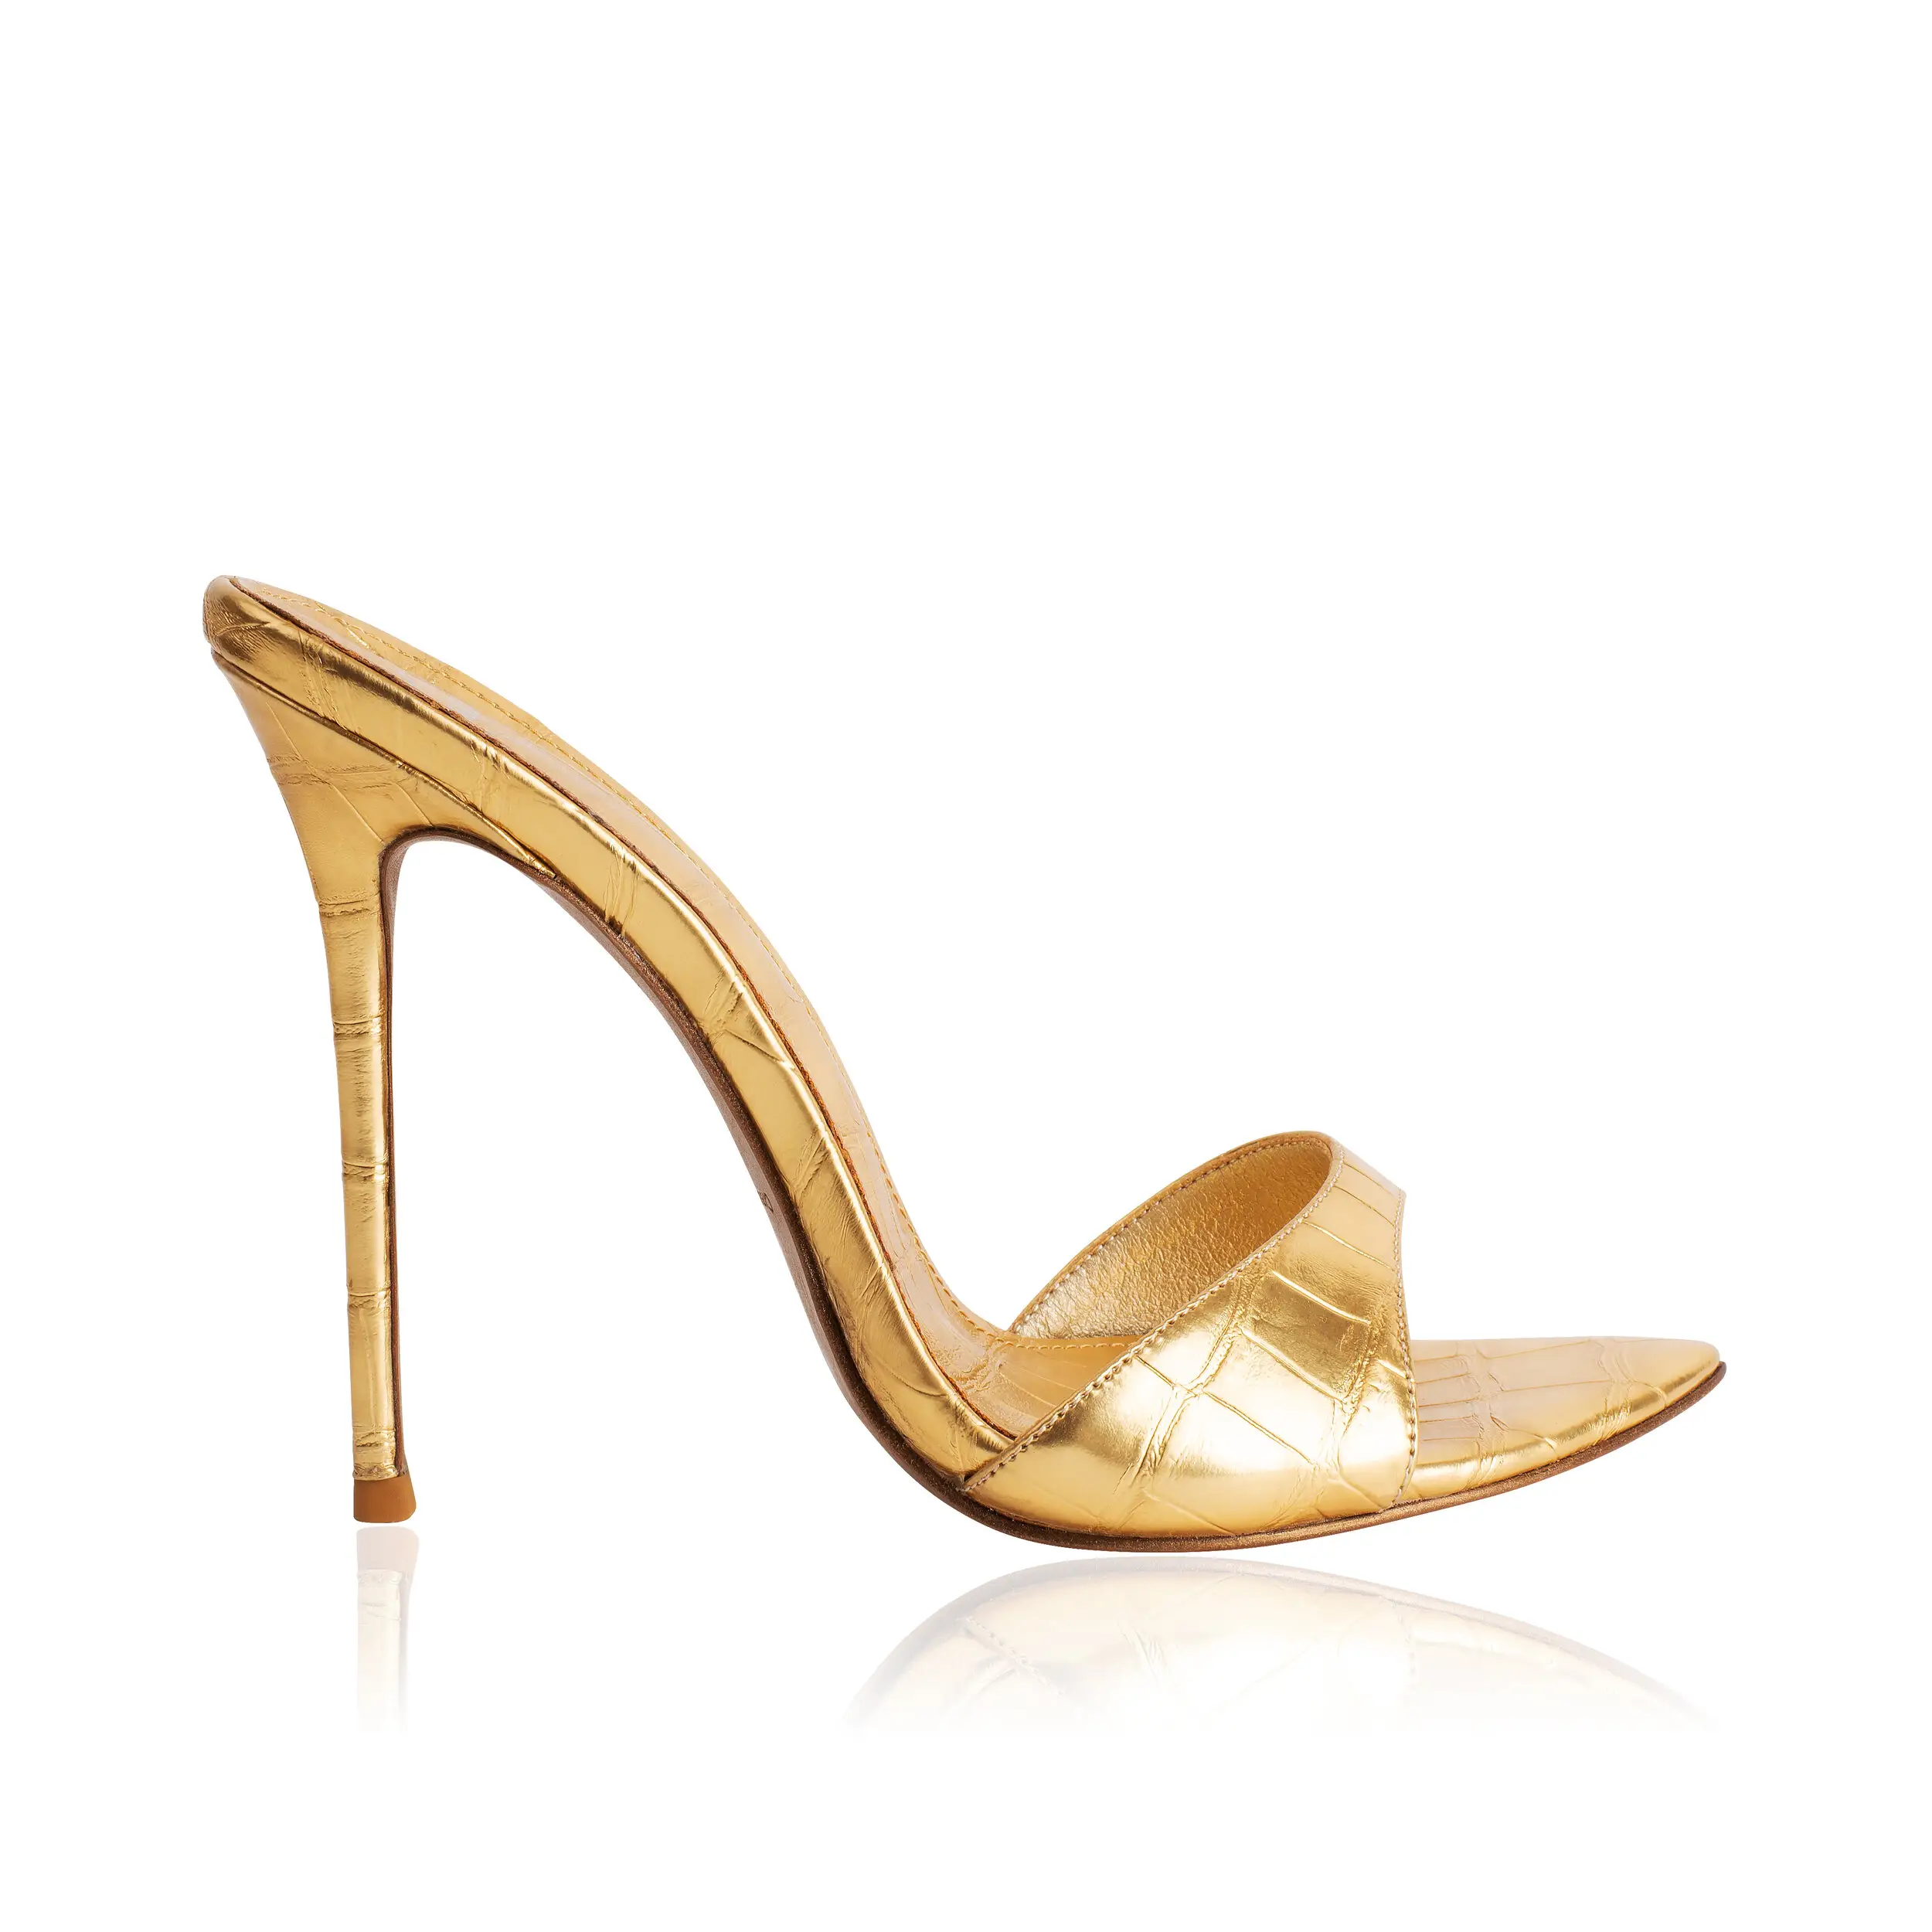 Wholesale Luxury Ladies High Heels Sandals Gold Croc Embossed Metallic 12cm Pencil Thin Heel Women Sandals